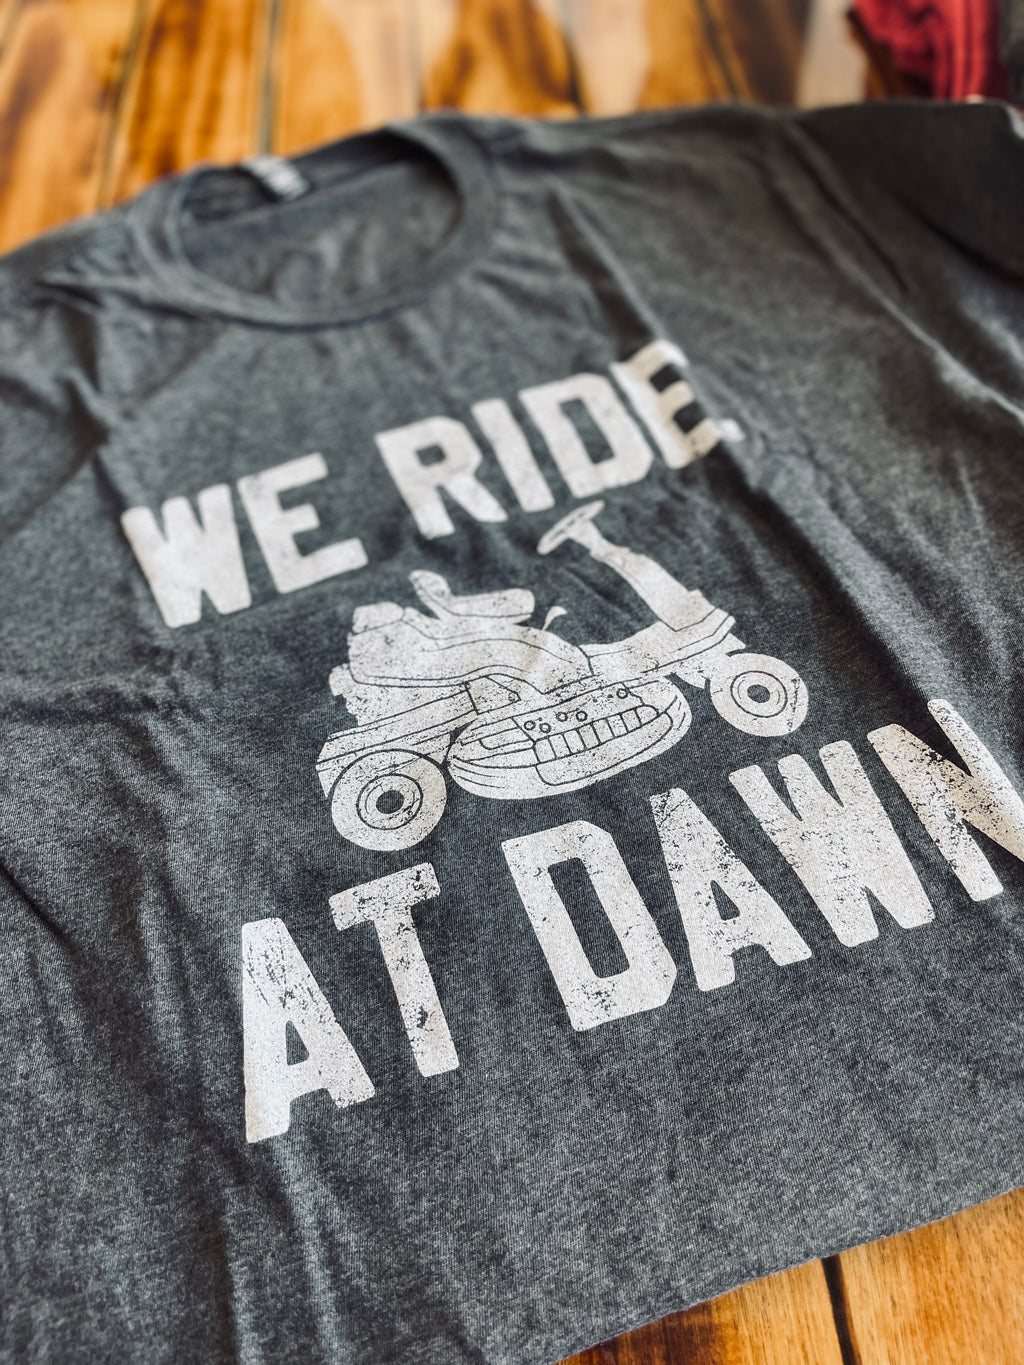 We ride at dawn tee